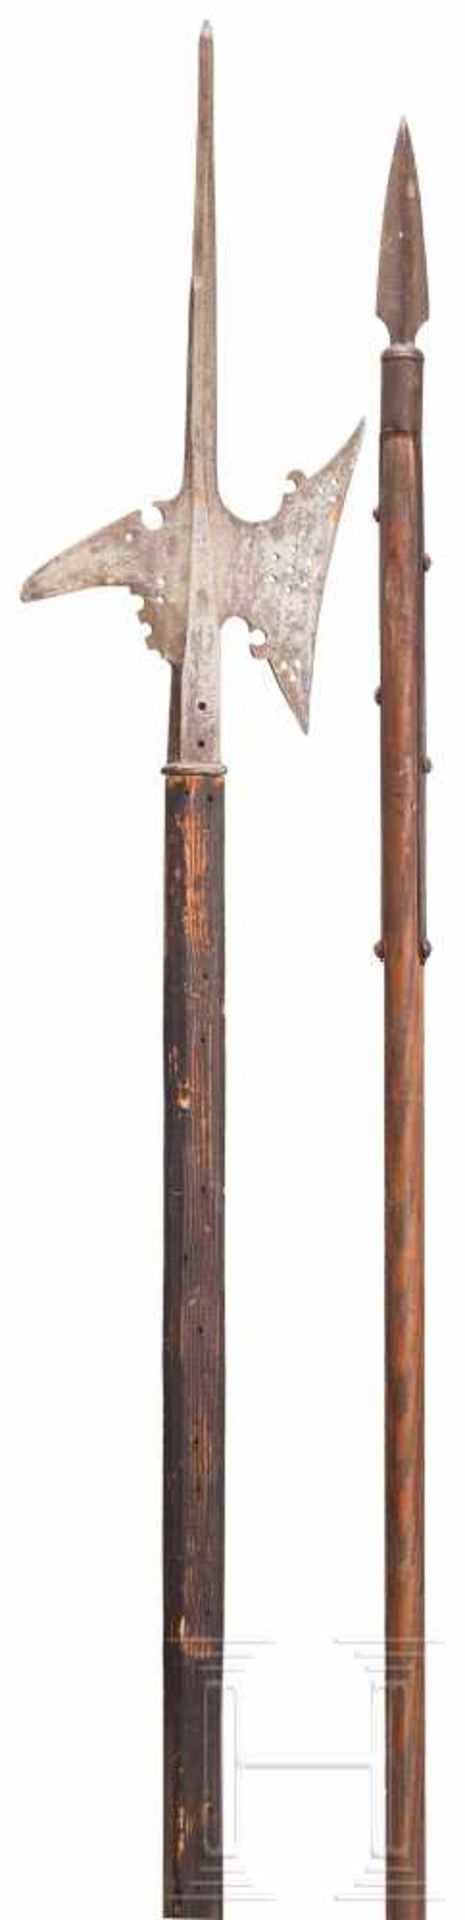 Helmbarte, Sammleranfertigung im Stil des 17. Jhdts.Kräftige, gekehlte Stoßspitze, konkaves